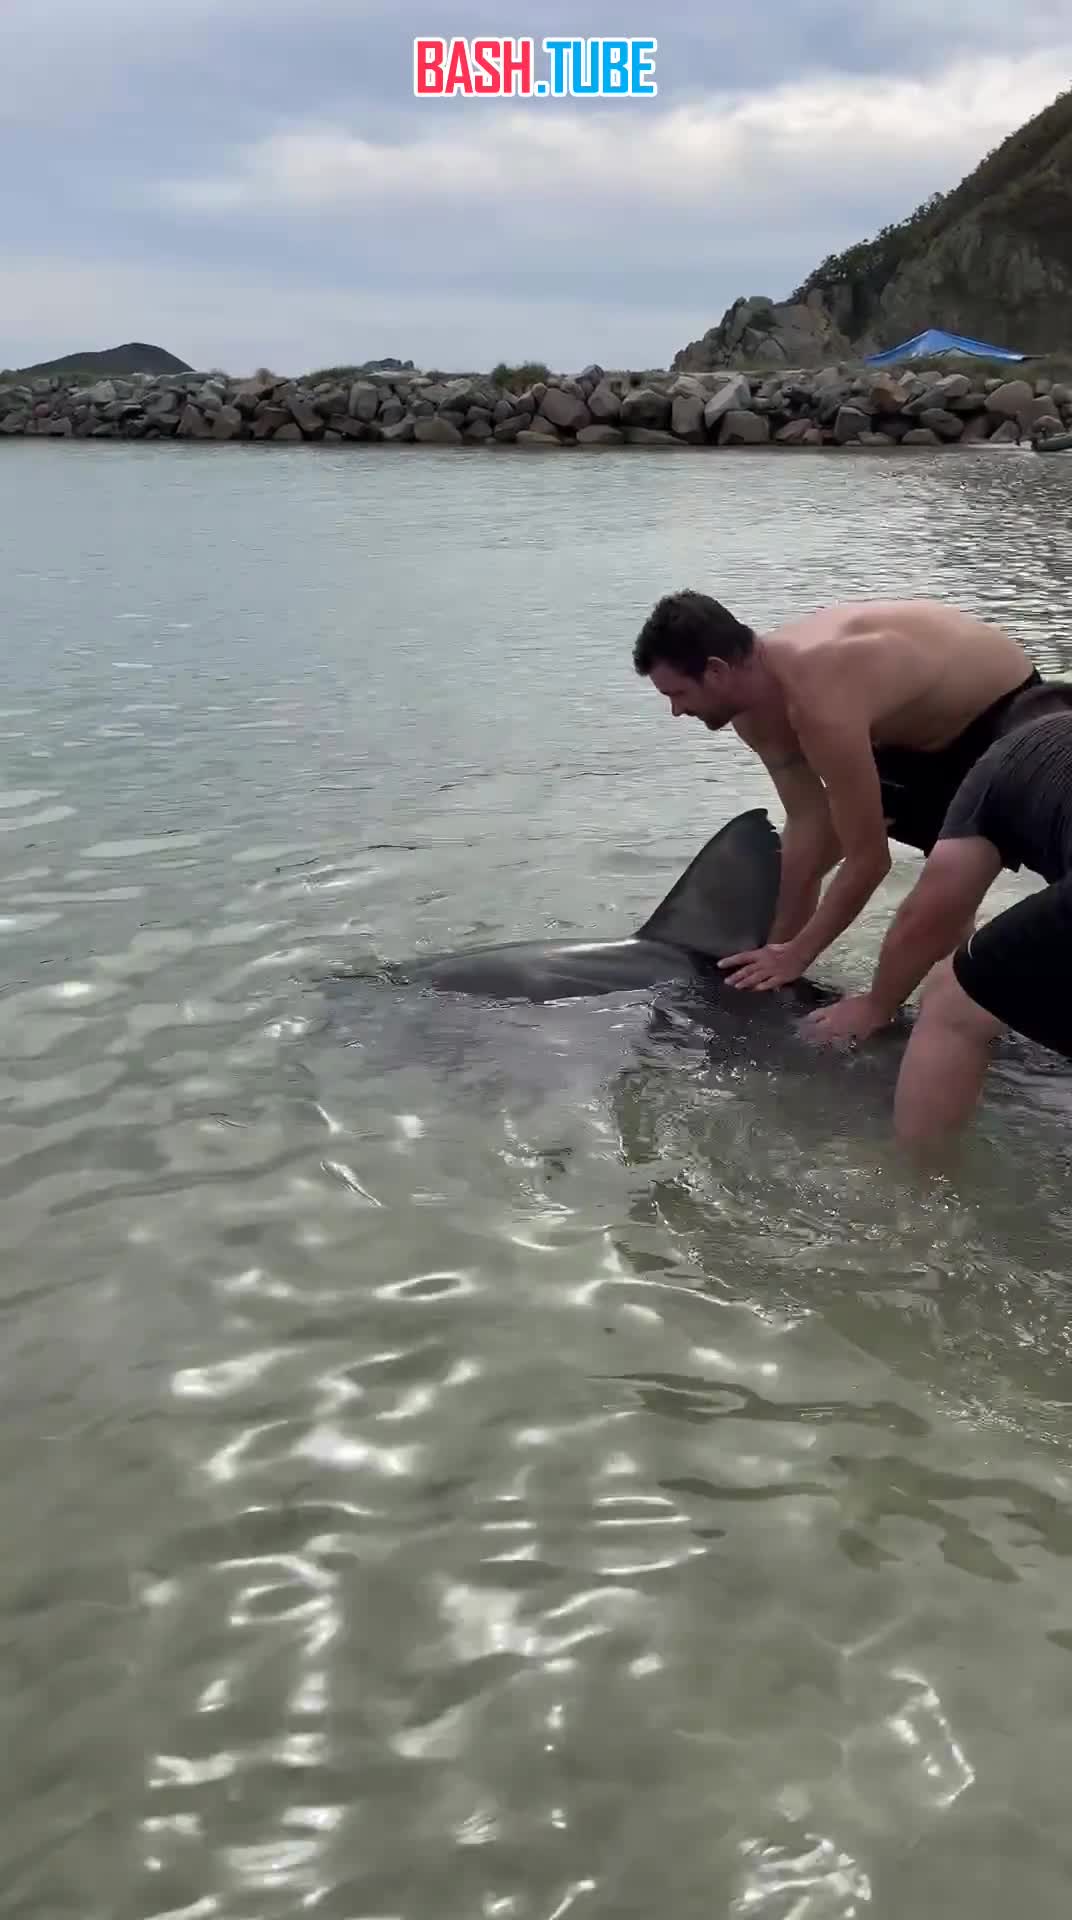  В Приморье отдыхающие поймали акулу рядом с туристической базой